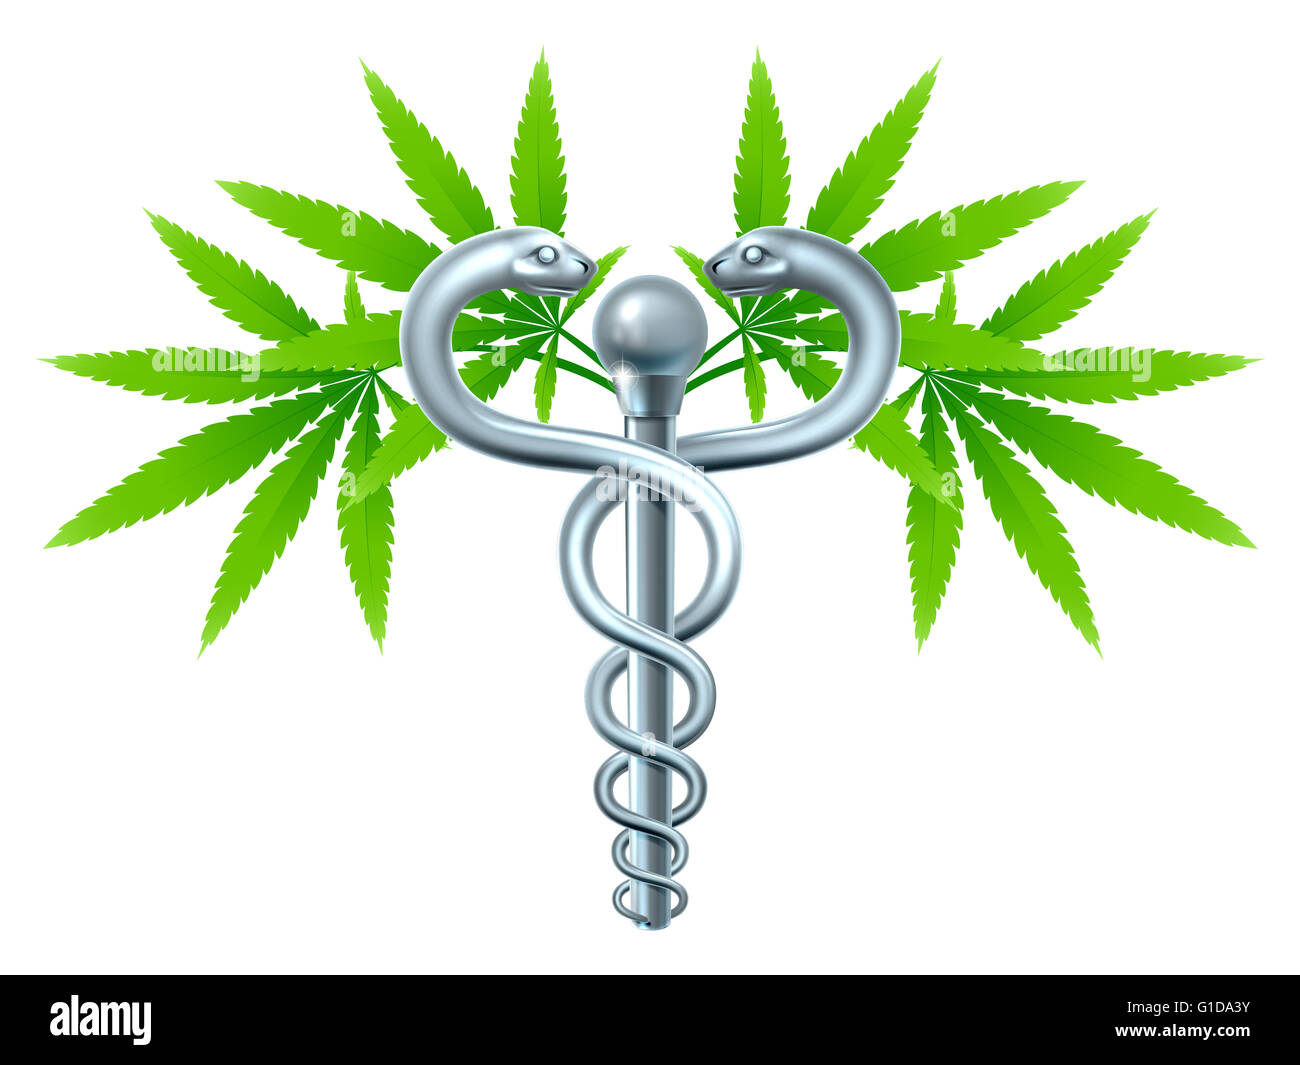 Una planta de marihuana medicinal caduceo concepto símbolo con la planta de la cannabis con hojas entrelazadas alrededor de una varilla Foto de stock